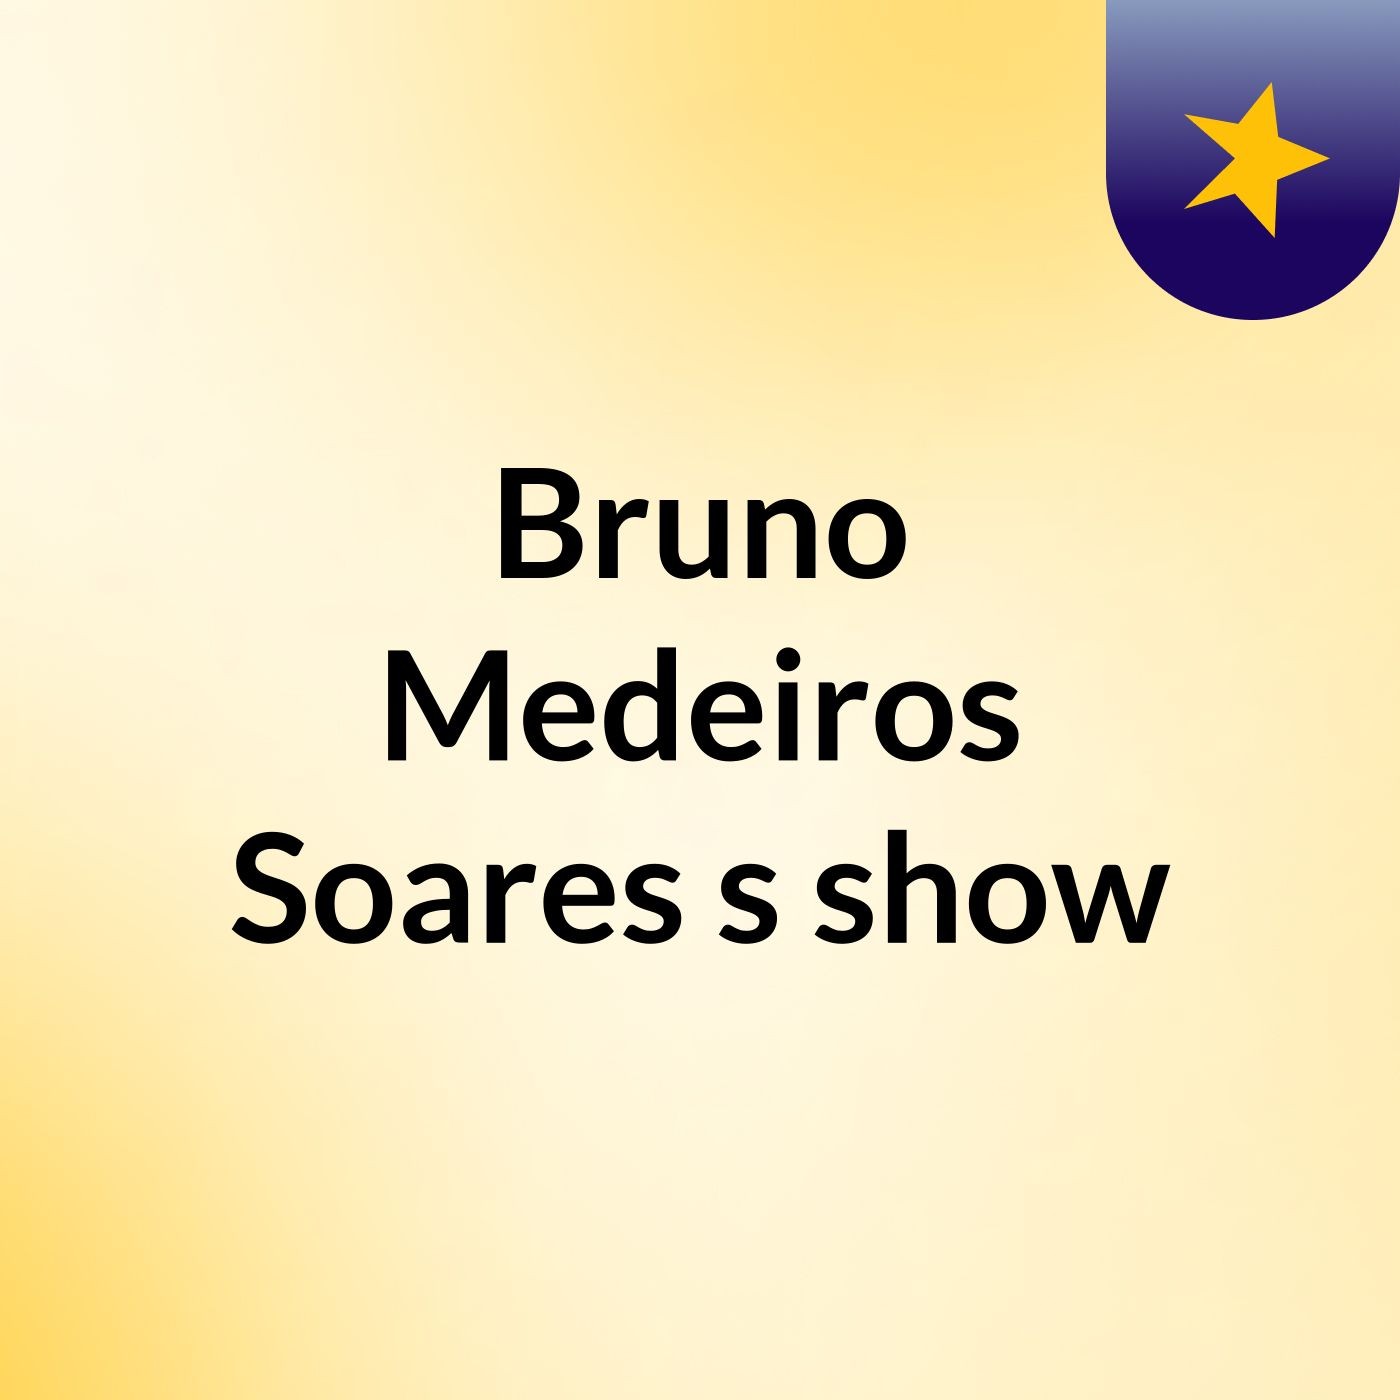 Bruno Medeiros Soares's show